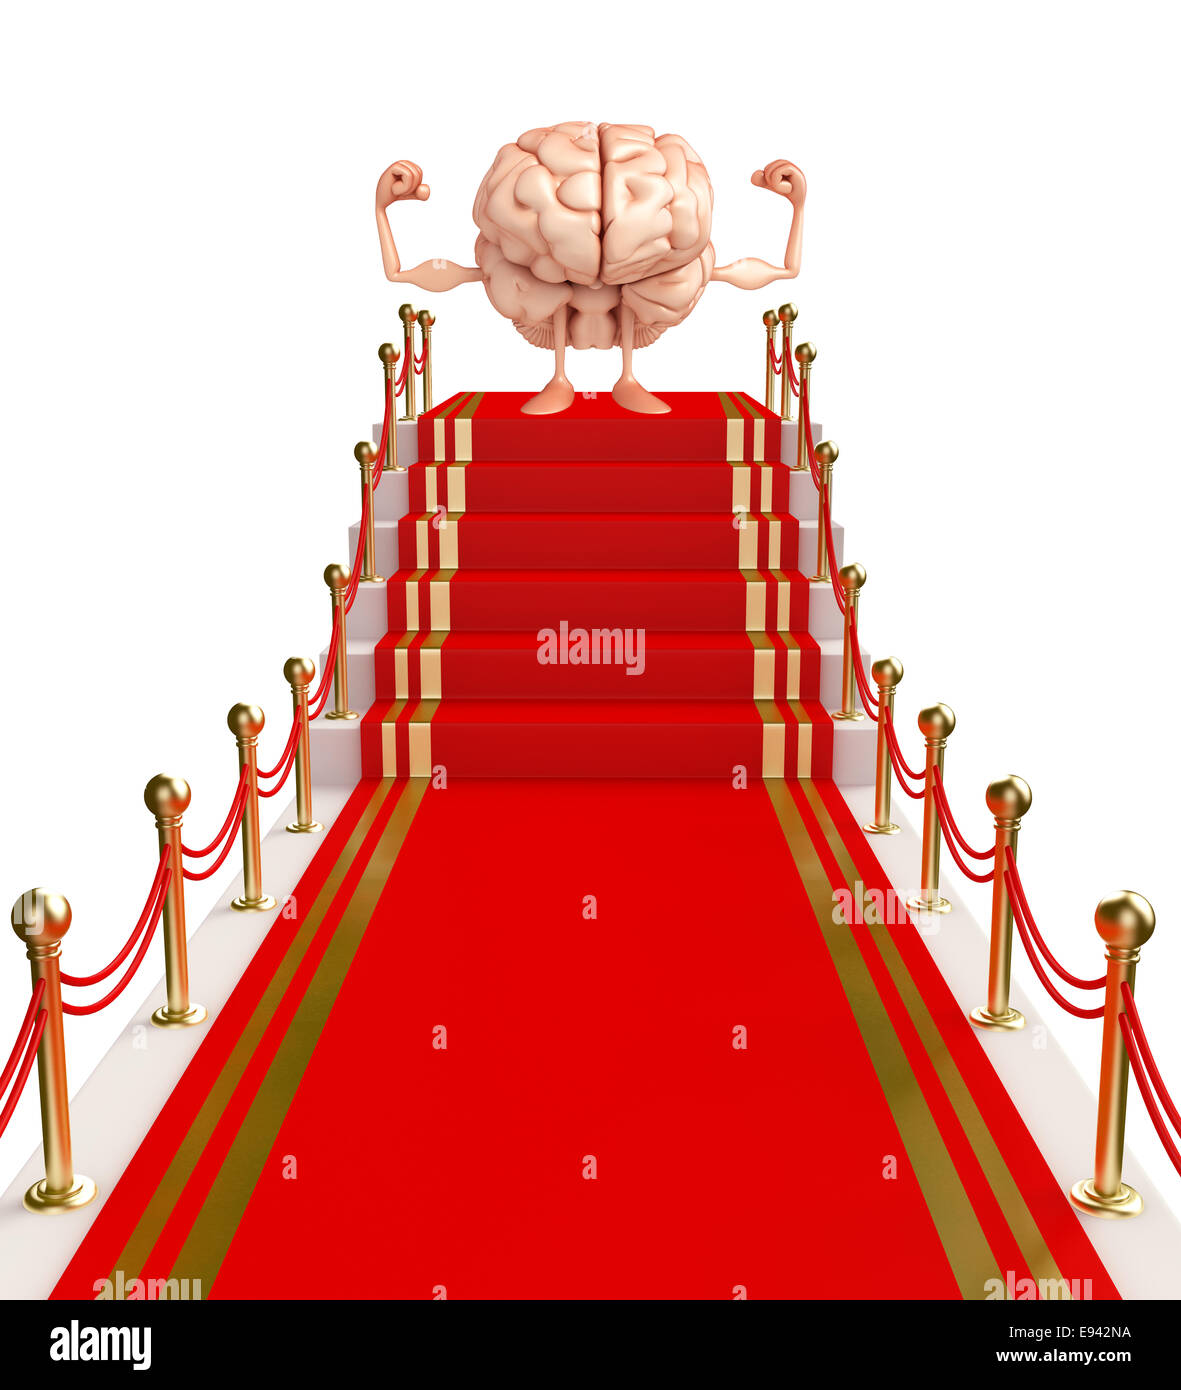 Cartoon-Figur des Gehirns mit rotem Teppich Stockfoto